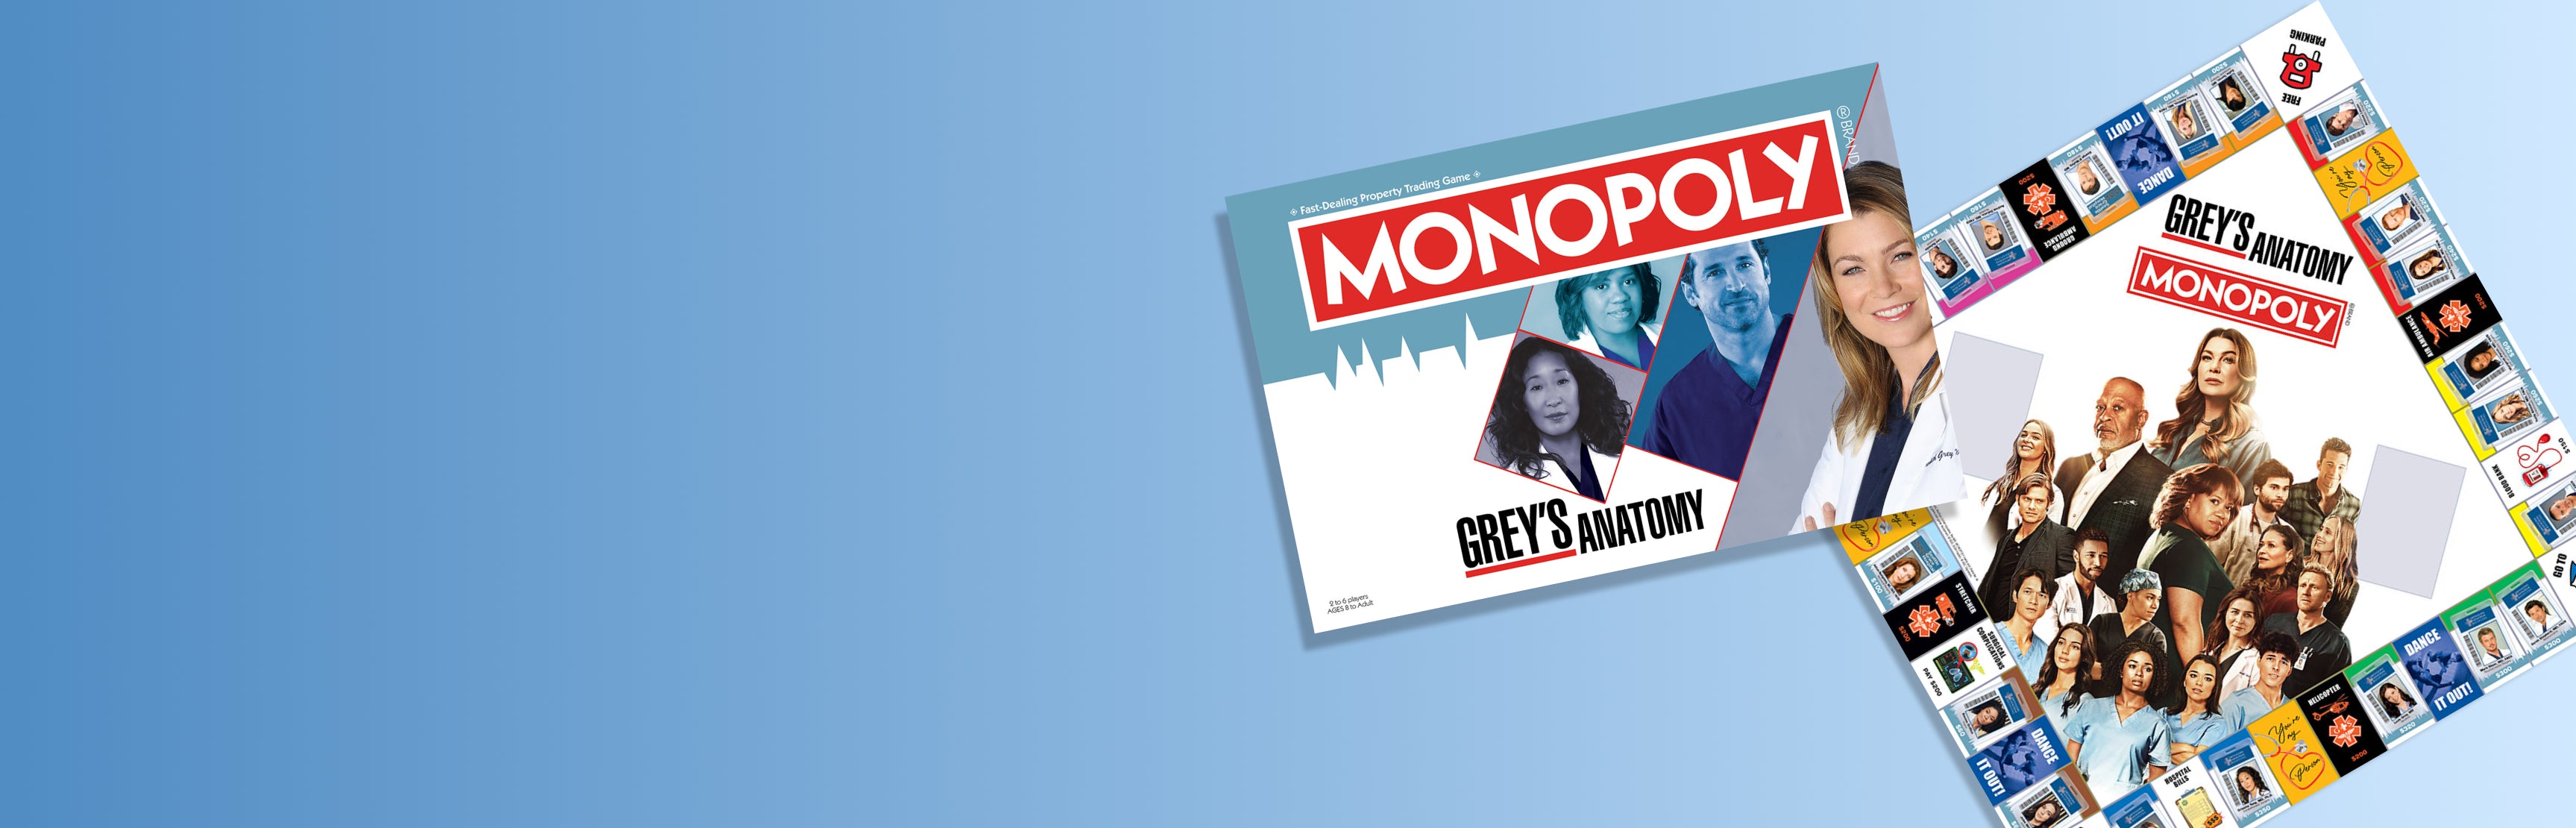 Grey's Anatomy Monopoly 805c8d39-f49f-440a-a3d9-391acbe4e2ce